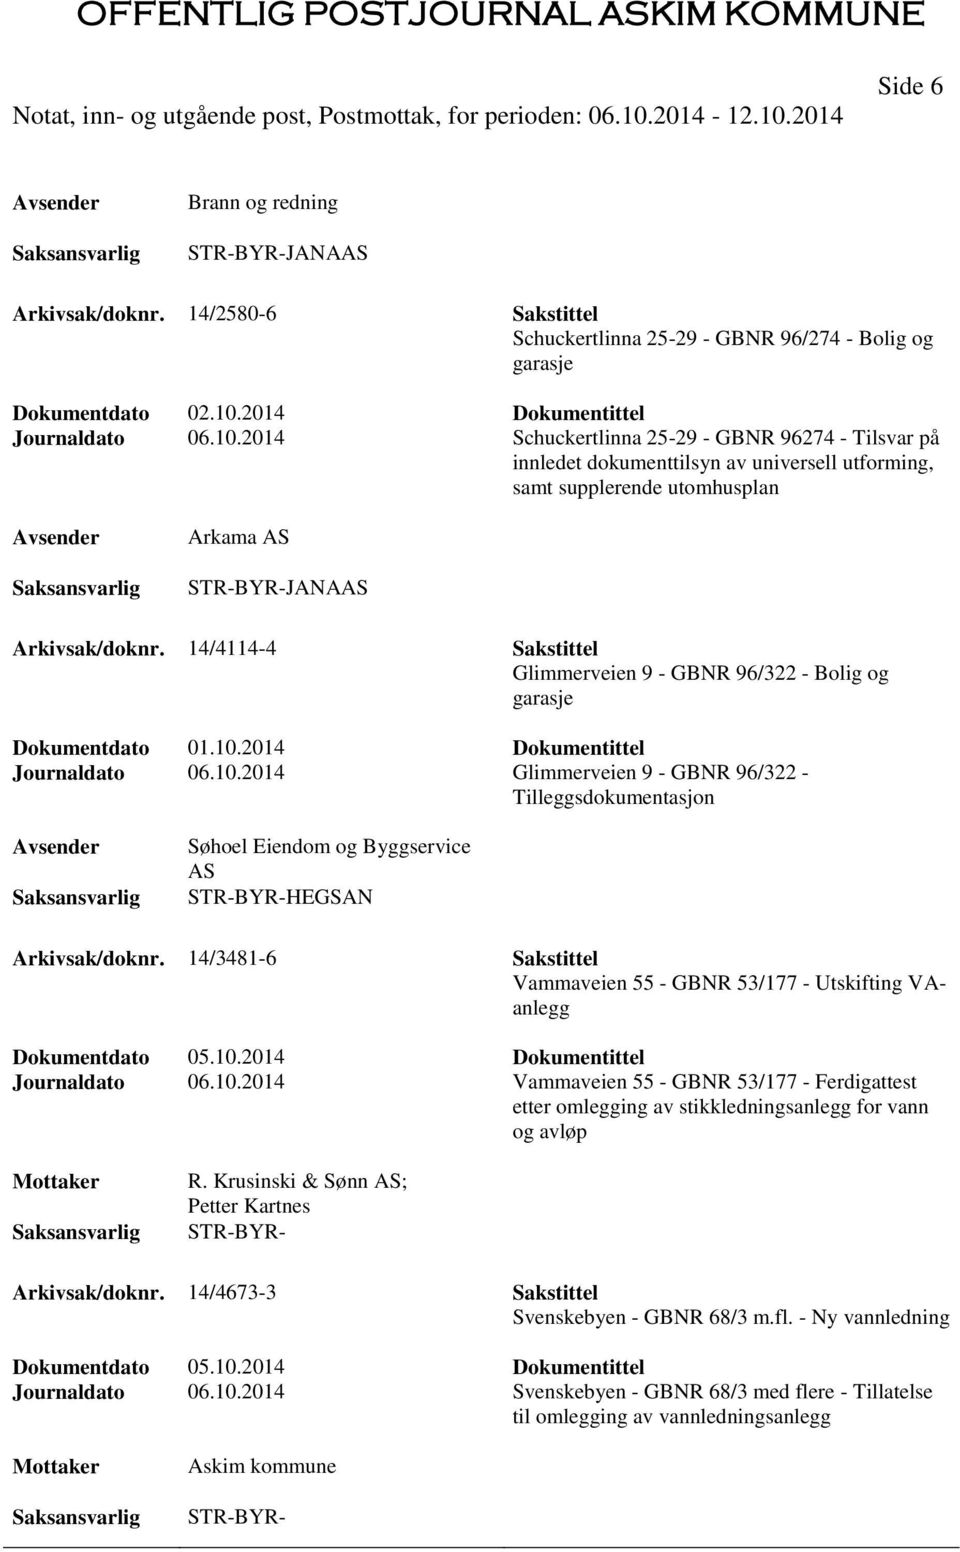 2014 Schuckertlinna 25-29 - GBNR 96274 - Tilsvar på innledet dokumenttilsyn av universell utforming, samt supplerende utomhusplan Arkama AS STR-BYR-JANAAS Arkivsak/doknr.